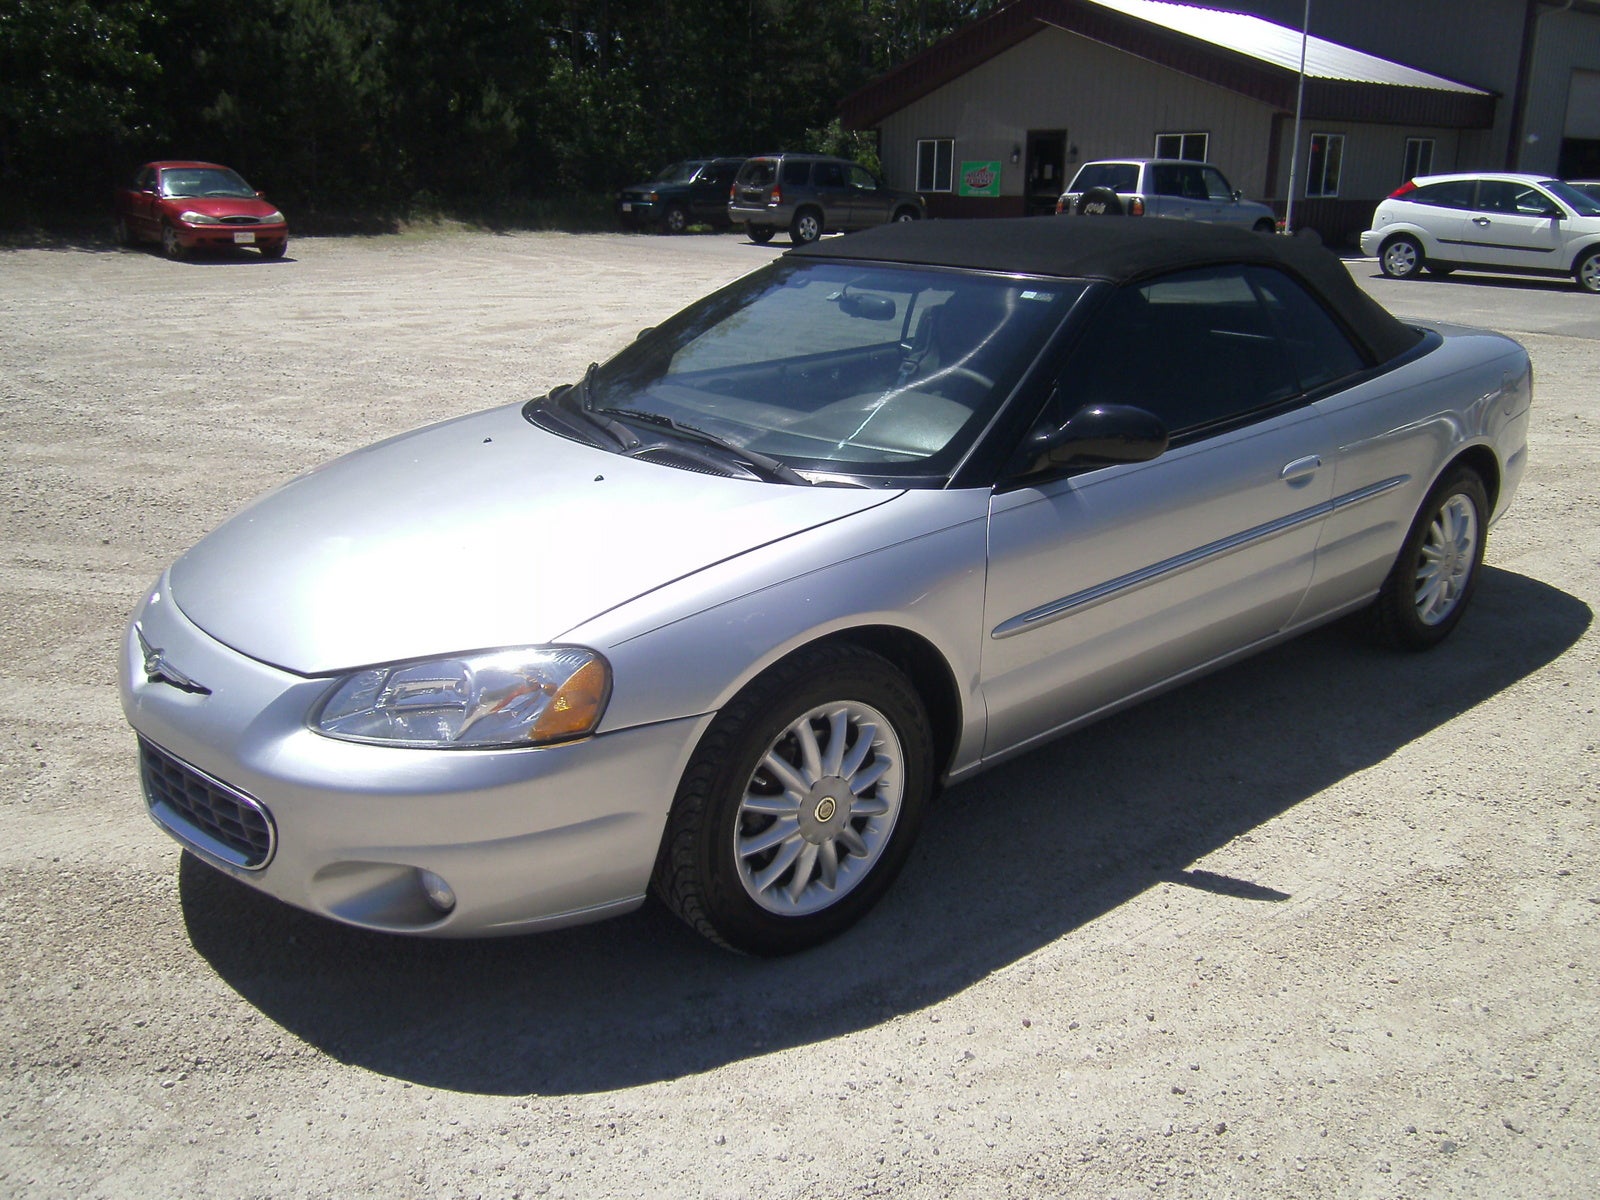 Chrysler sebring lxi 2002 specs